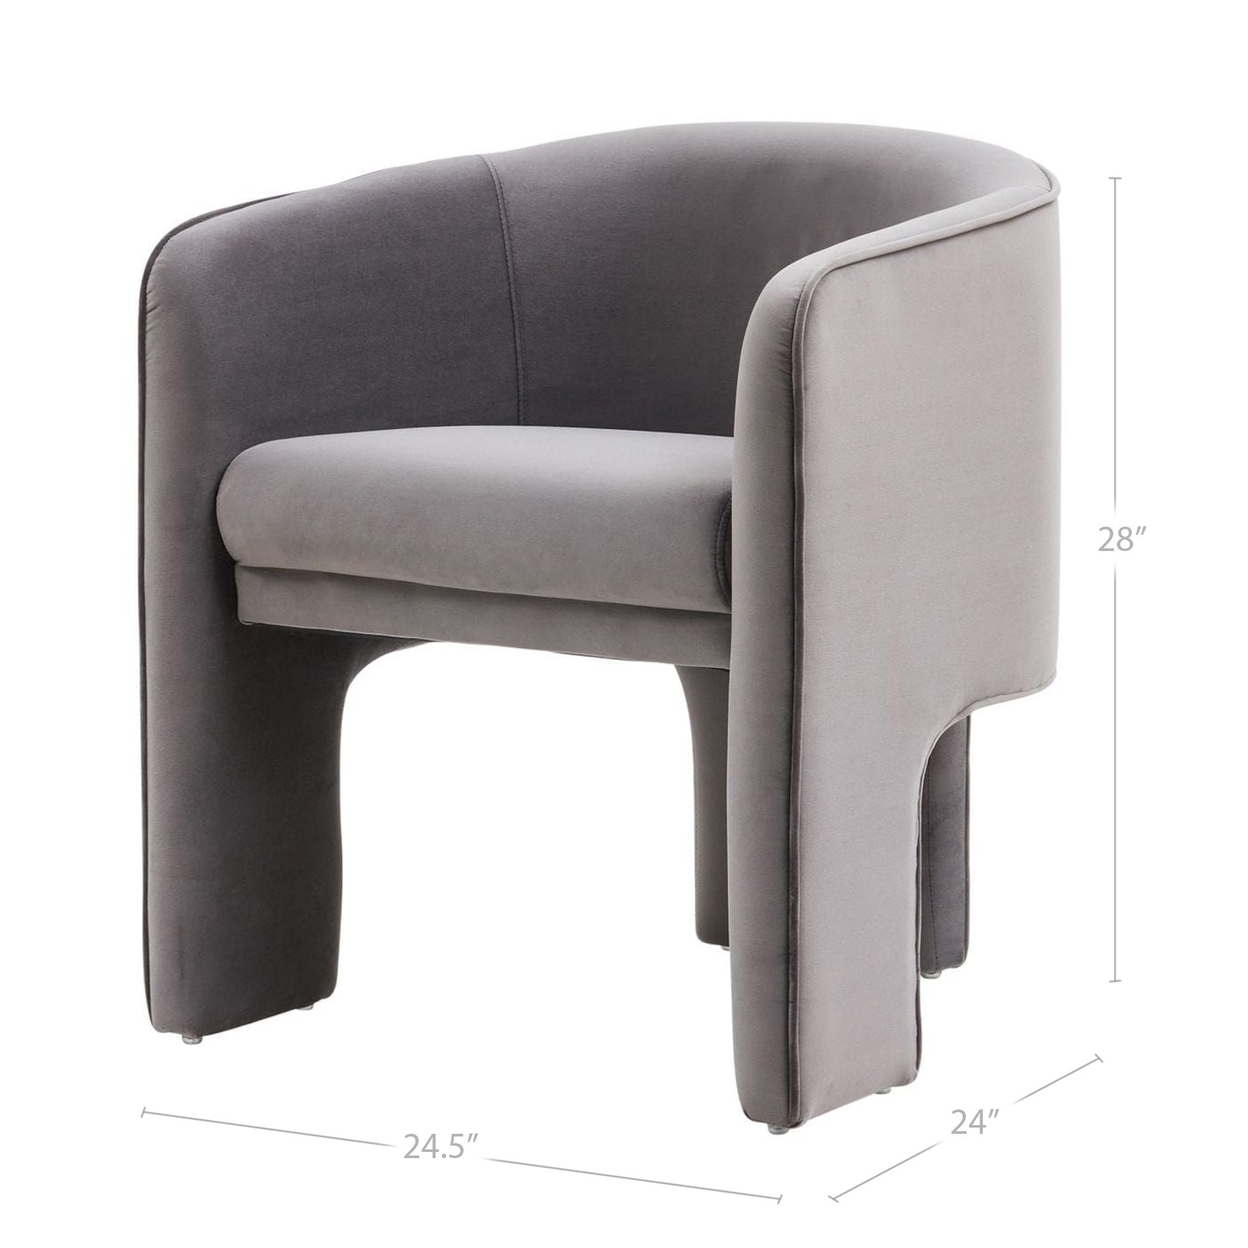 Cid Yen 24 Inch Accent Chair, Gray Velvet, Curved Back, 3 Legged Base - Saltoro Sherpi